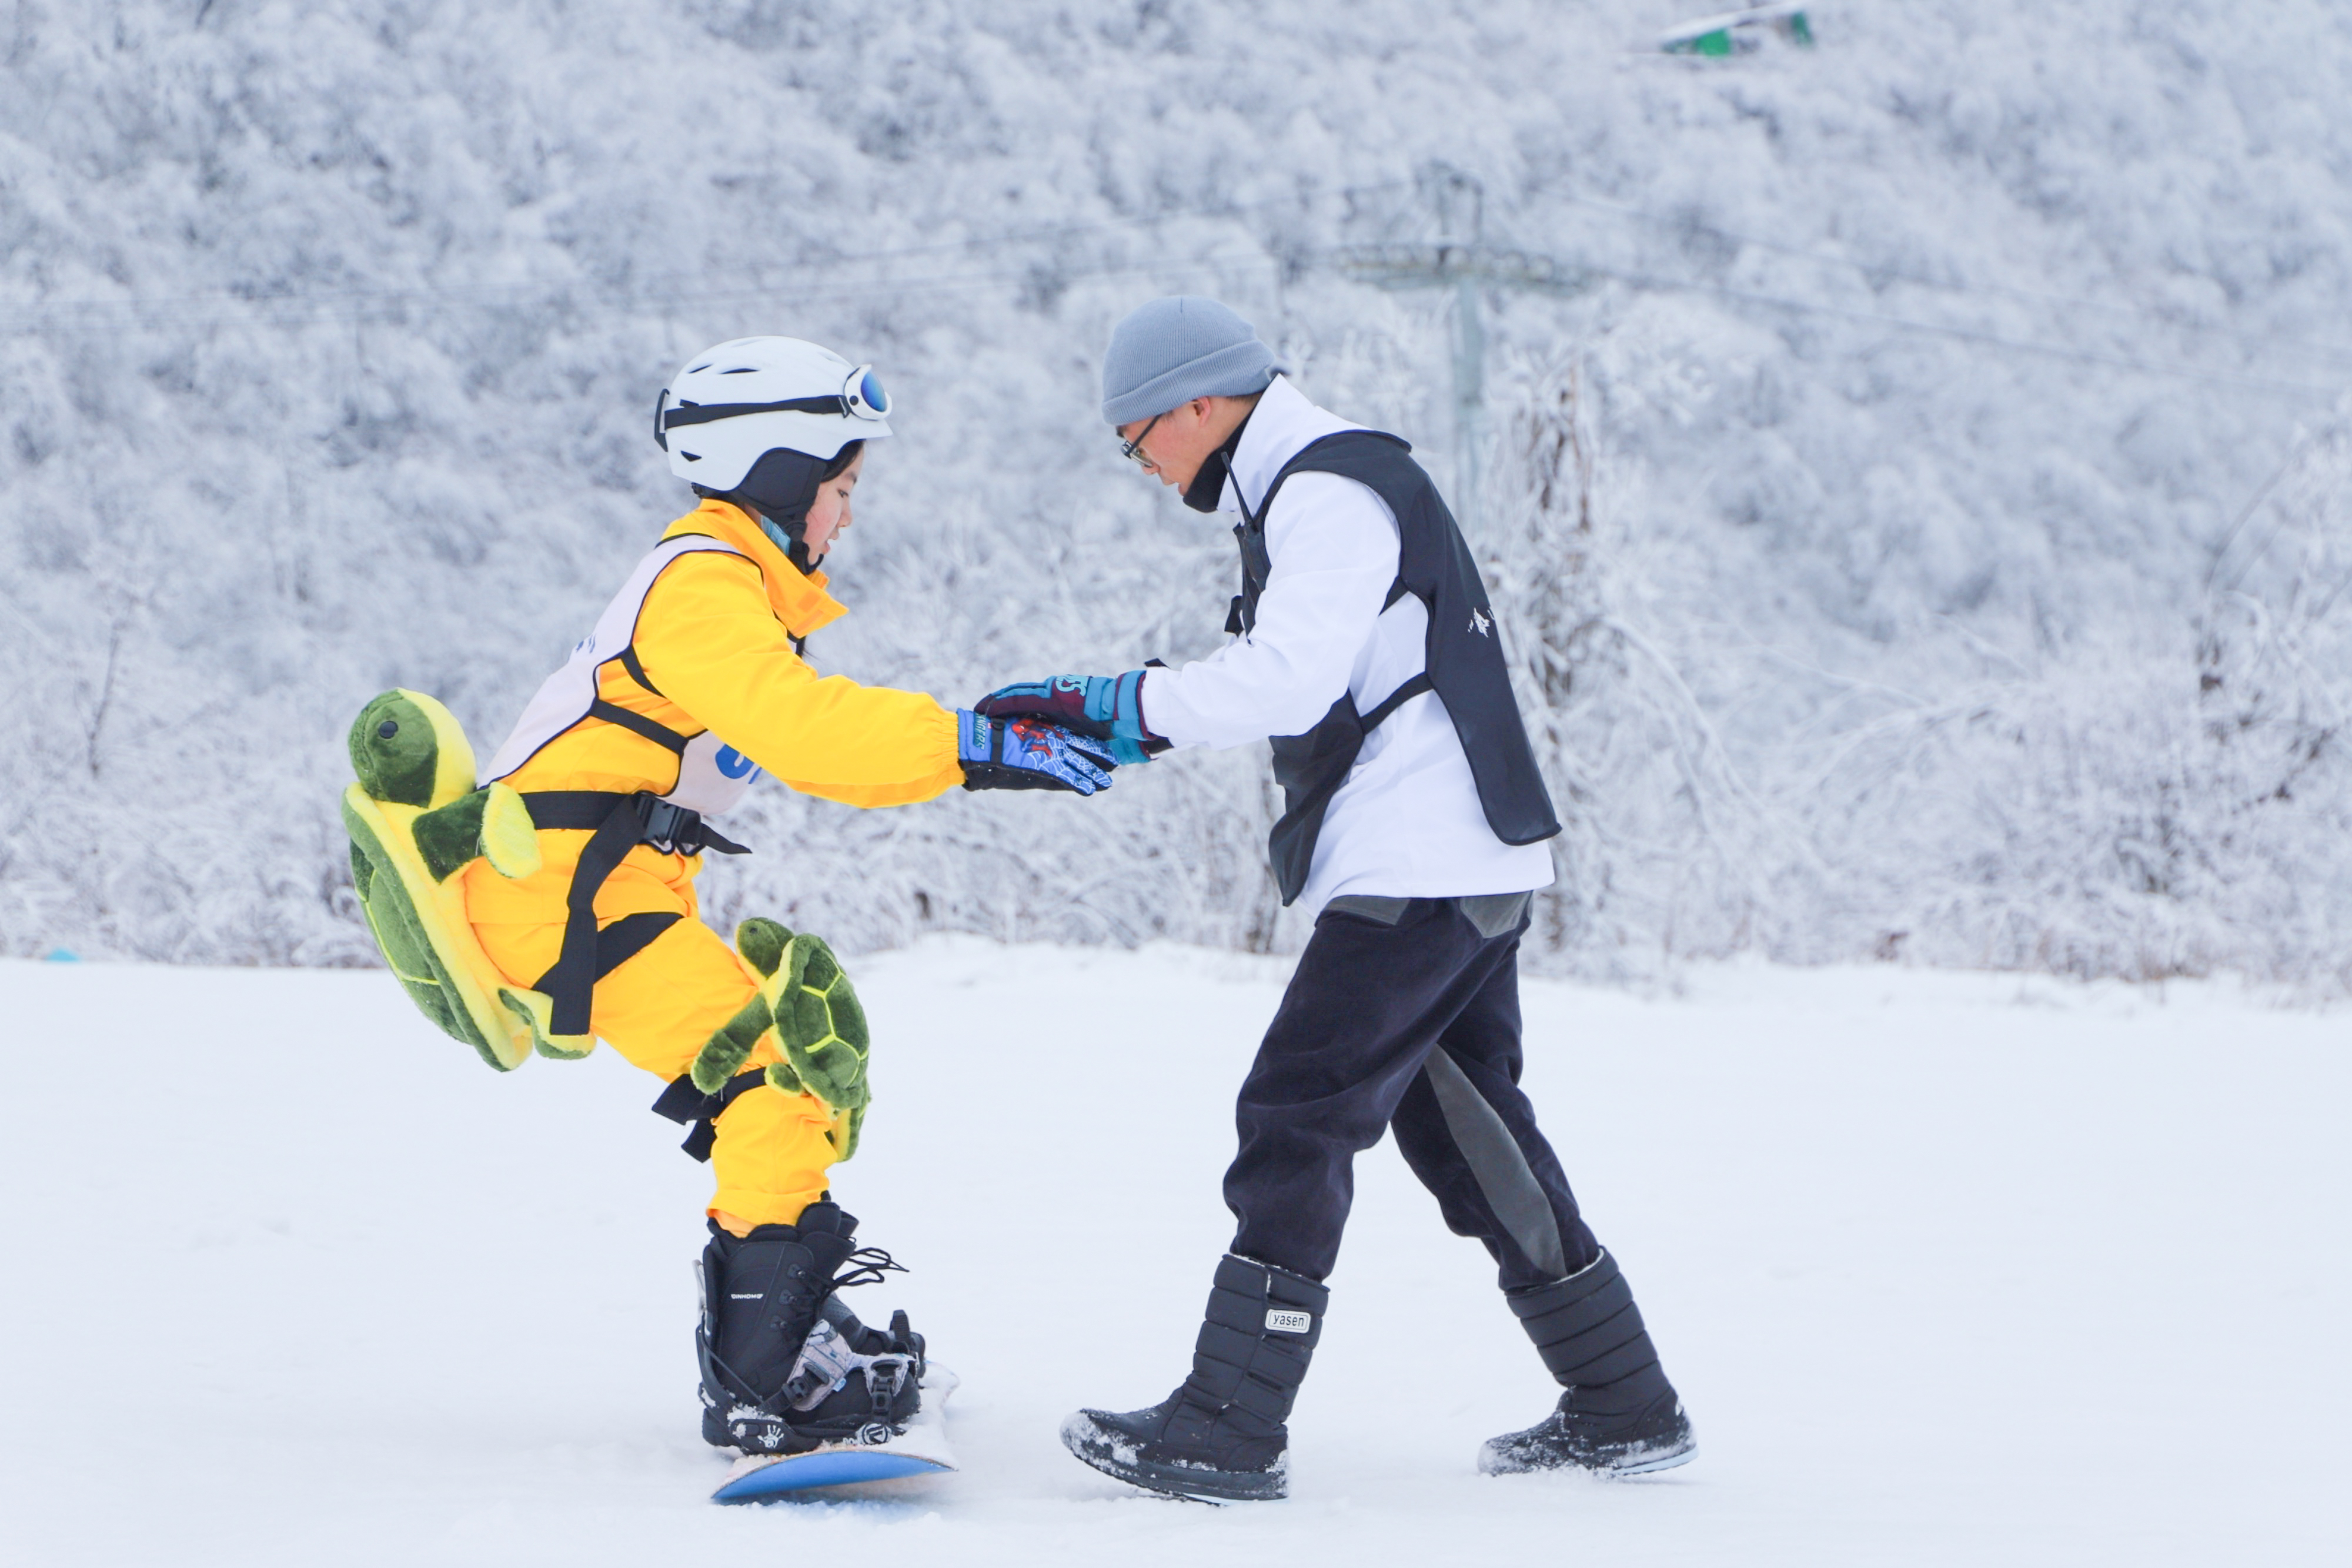 【鬃狮camp滑雪冬令营】开板啦!这个冬天不要再错过滑雪的快乐!